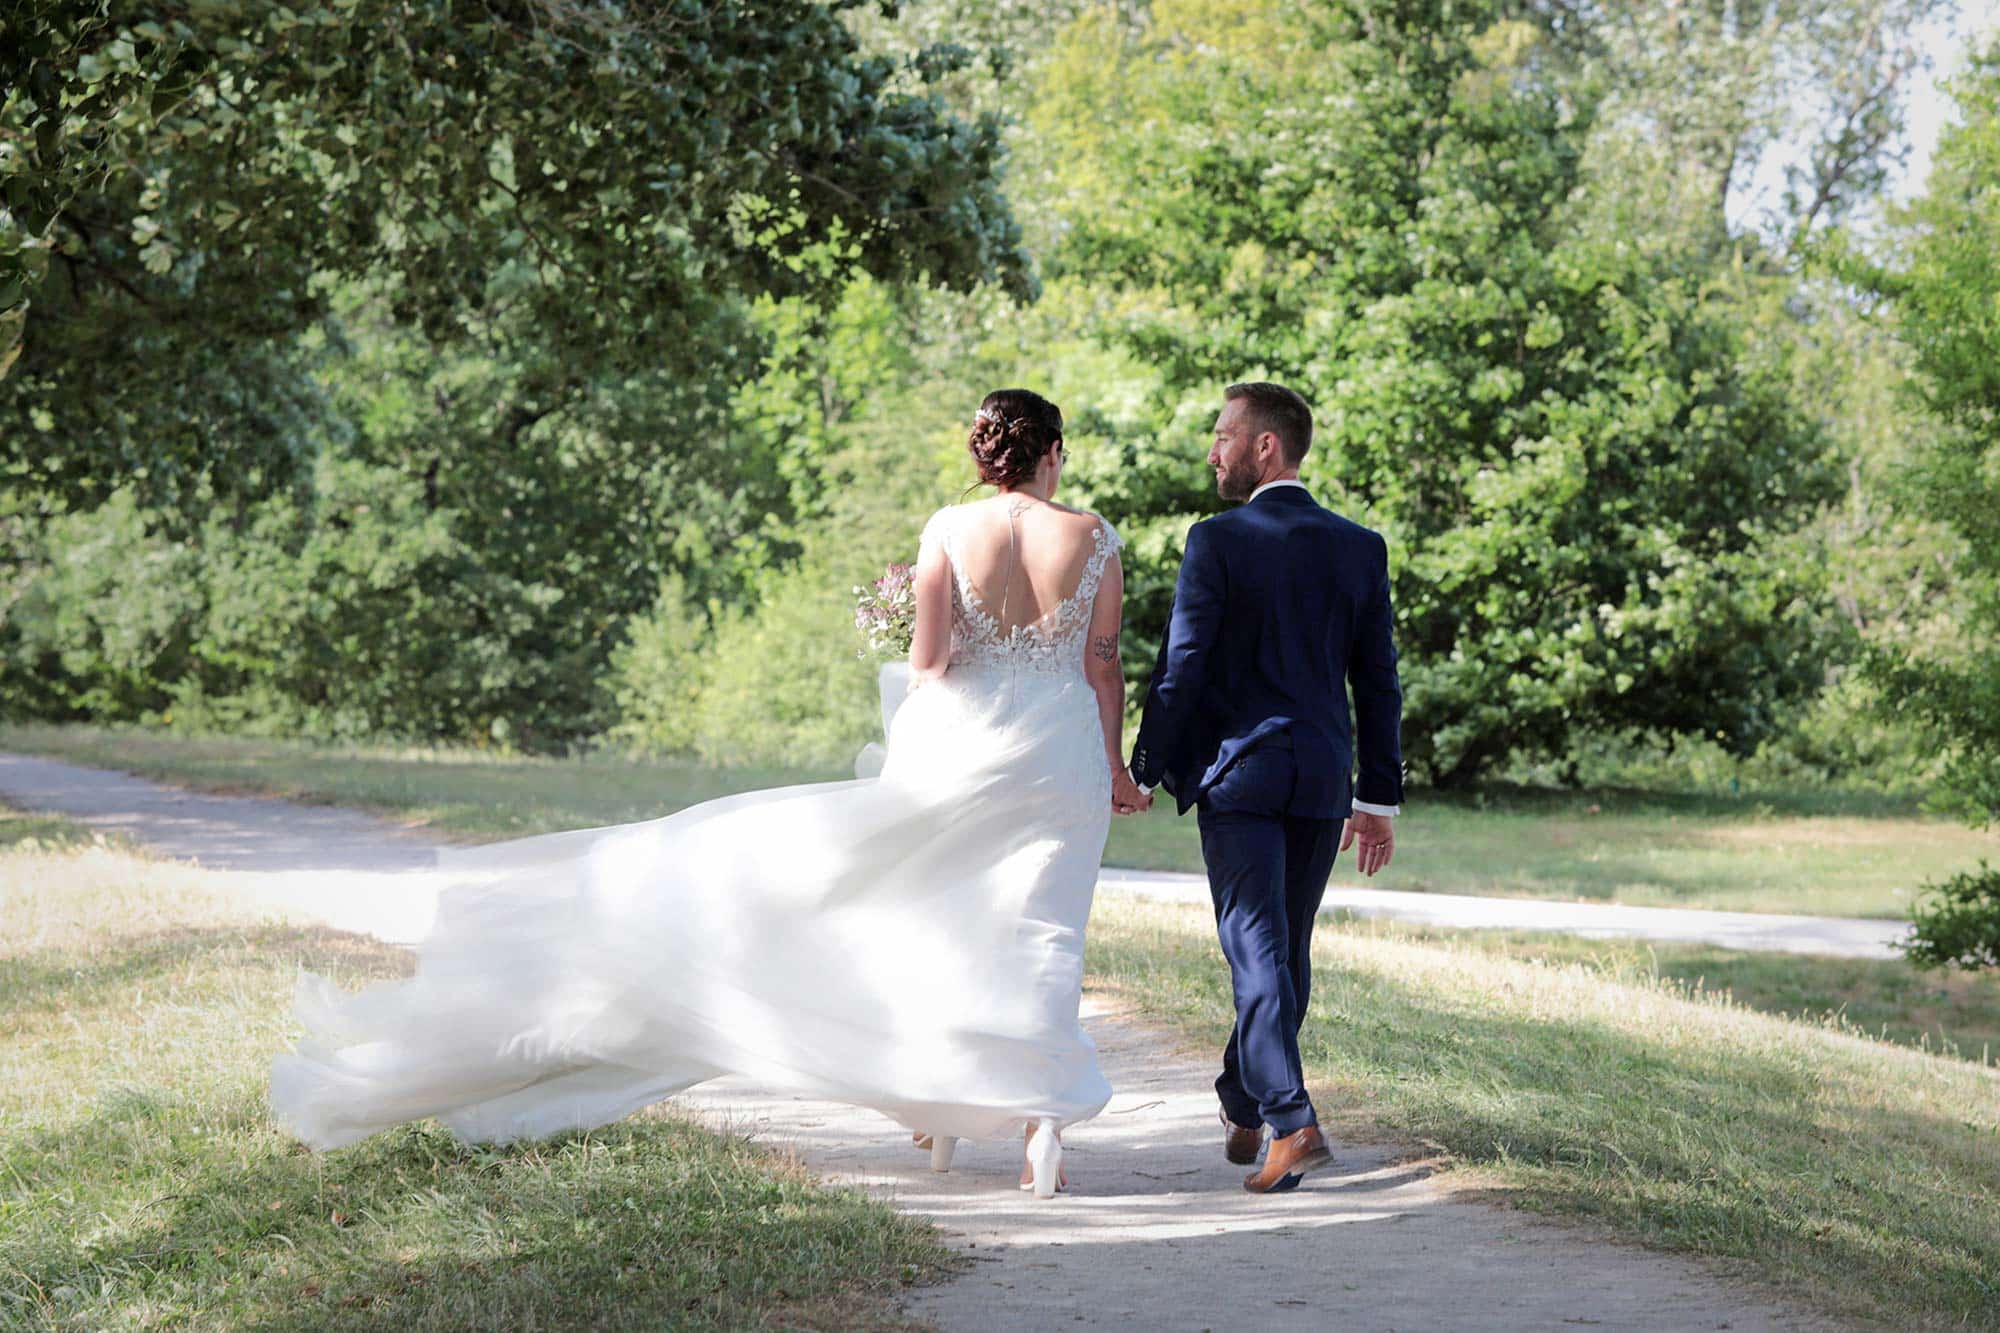 Les mariés avancent dans un chemin pendant que je les photographie